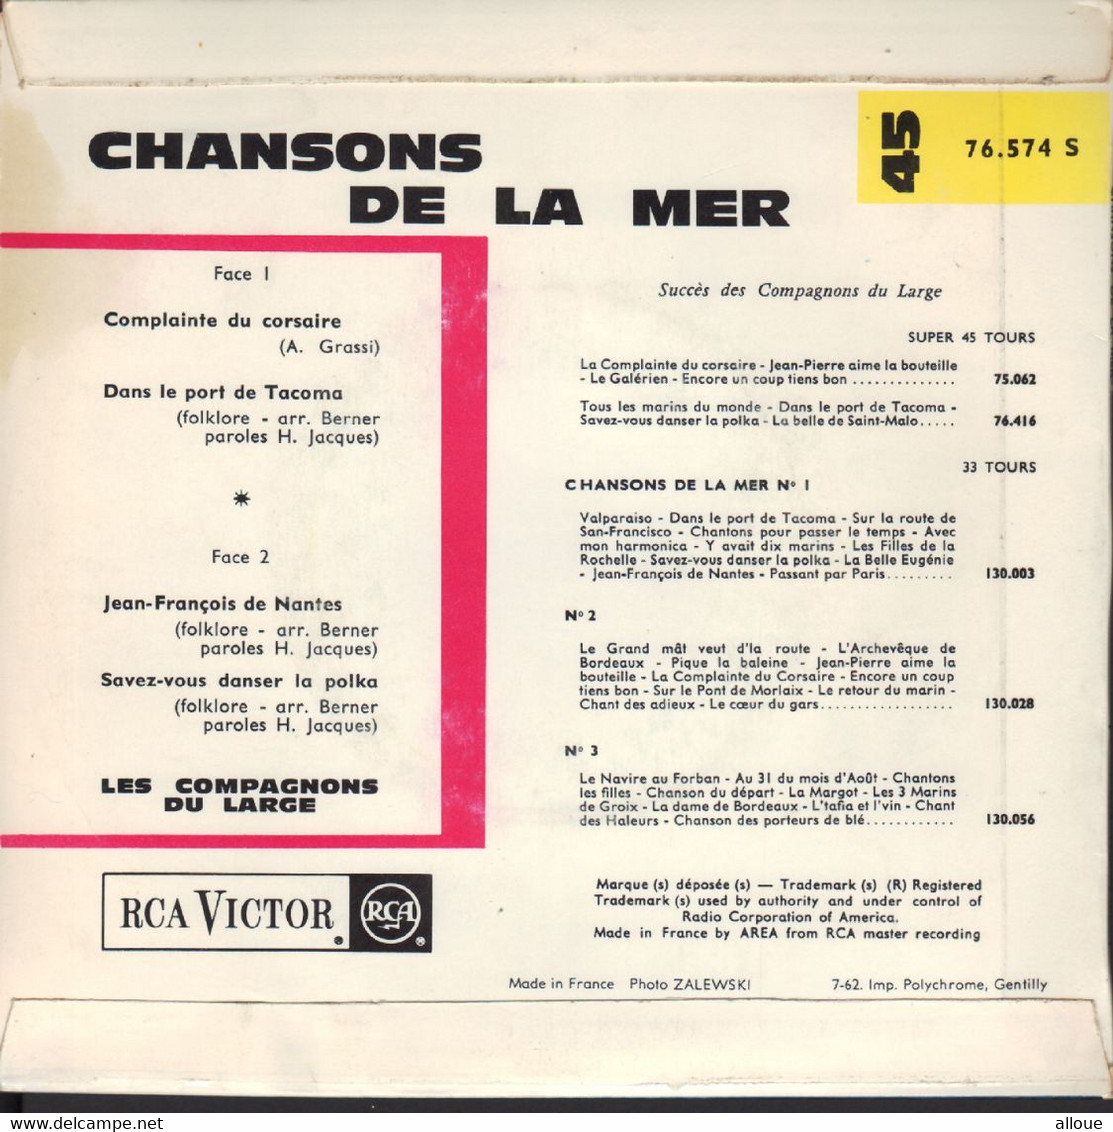 LES COMPAGNONS DU LARGE  - FR EP - CHANSONS DE LA MER - Musiques Du Monde